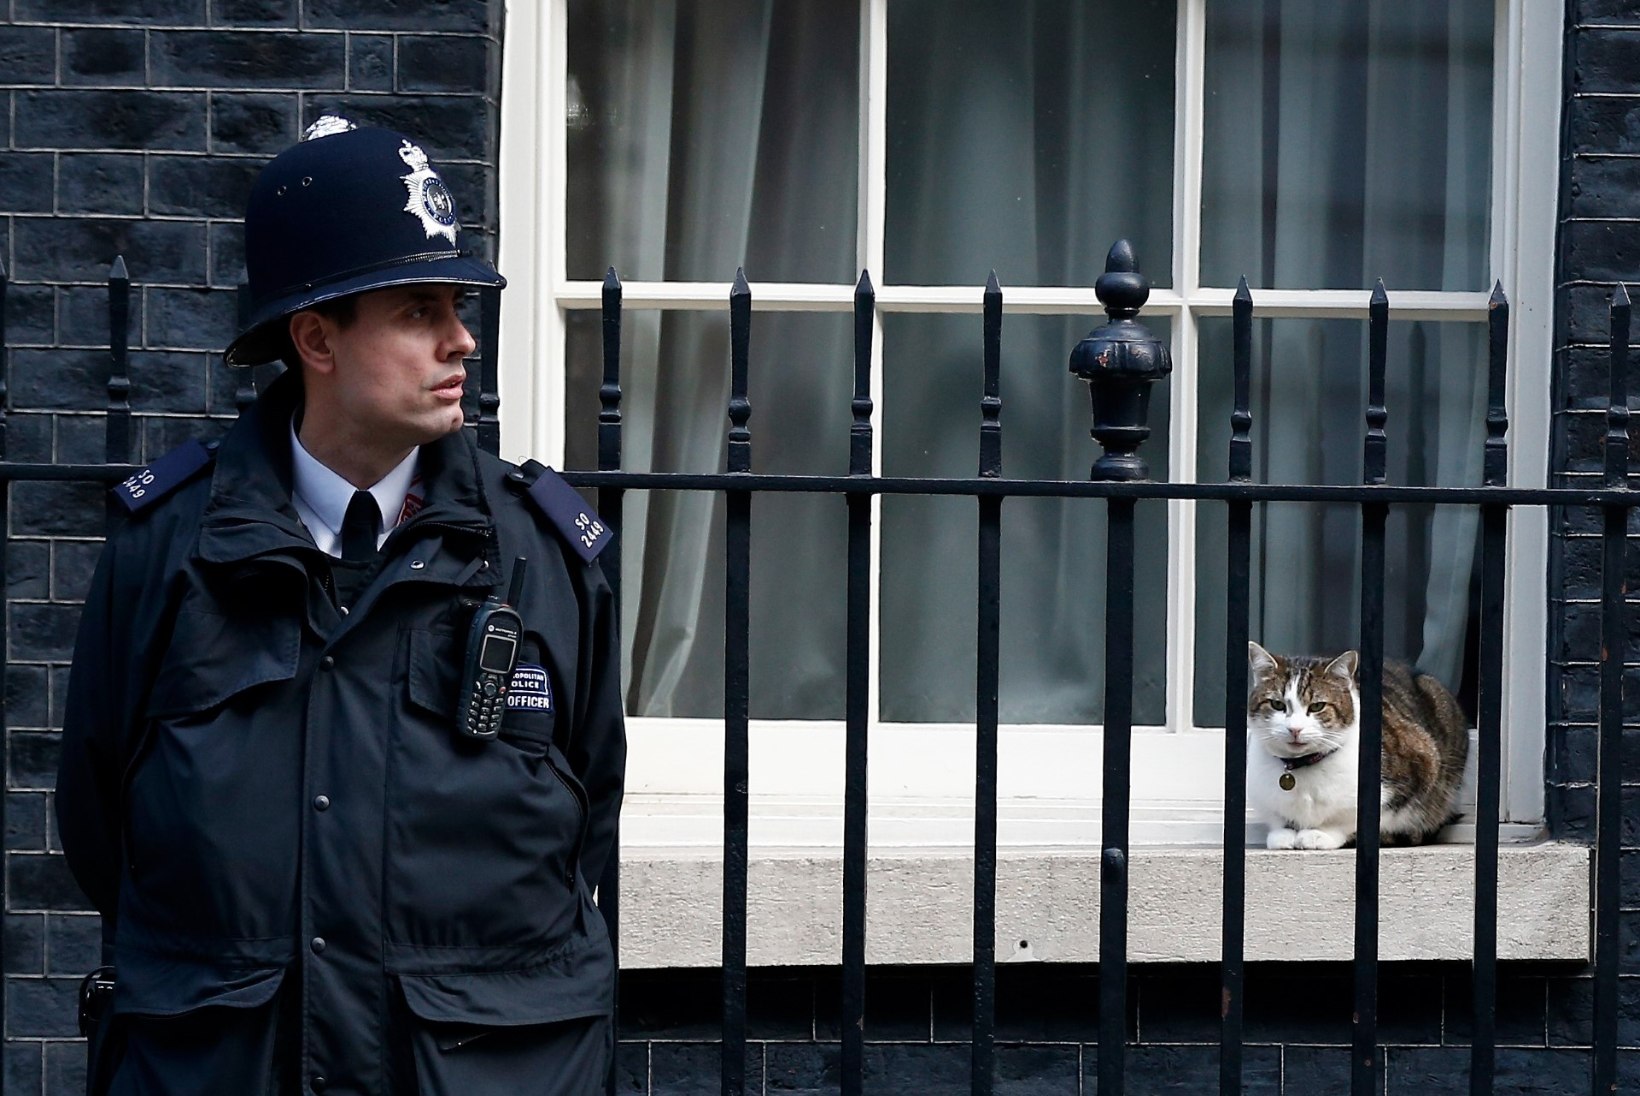 Suurbritannia valitsushoones elav kass lööb ajakirjanduses pea sama palju laineid kui Theresa May